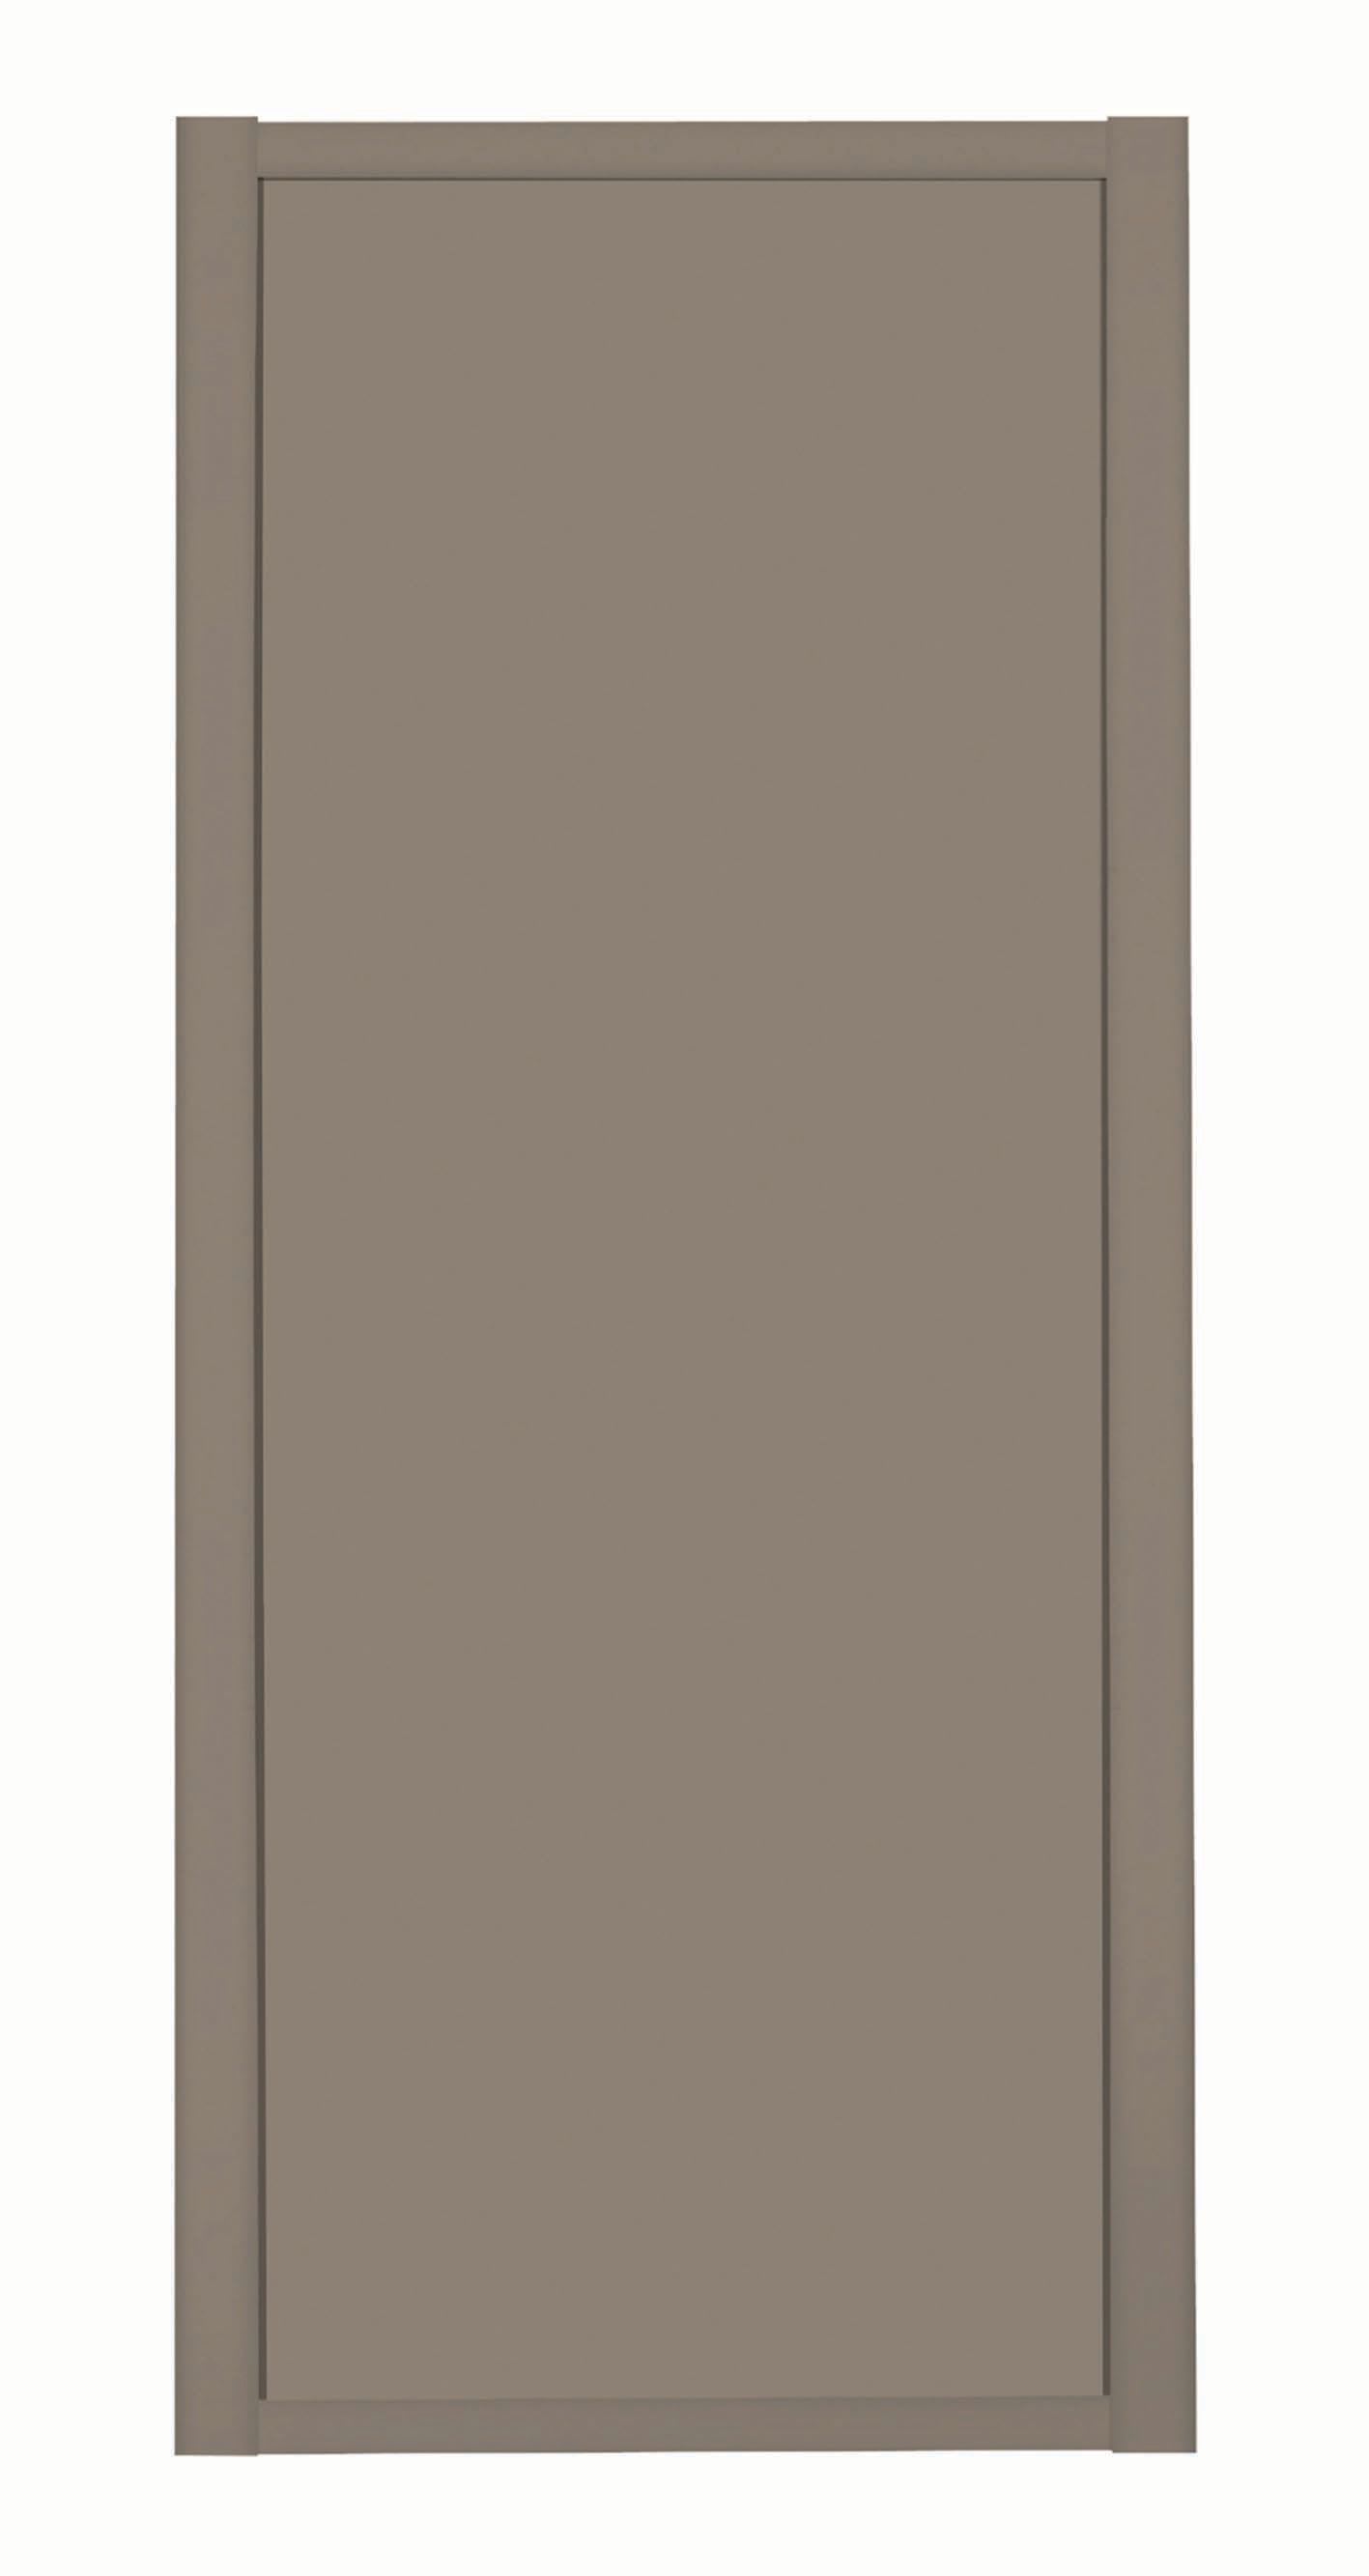 Spacepro Shaker 1 Panel Stone Grey Frame Stone